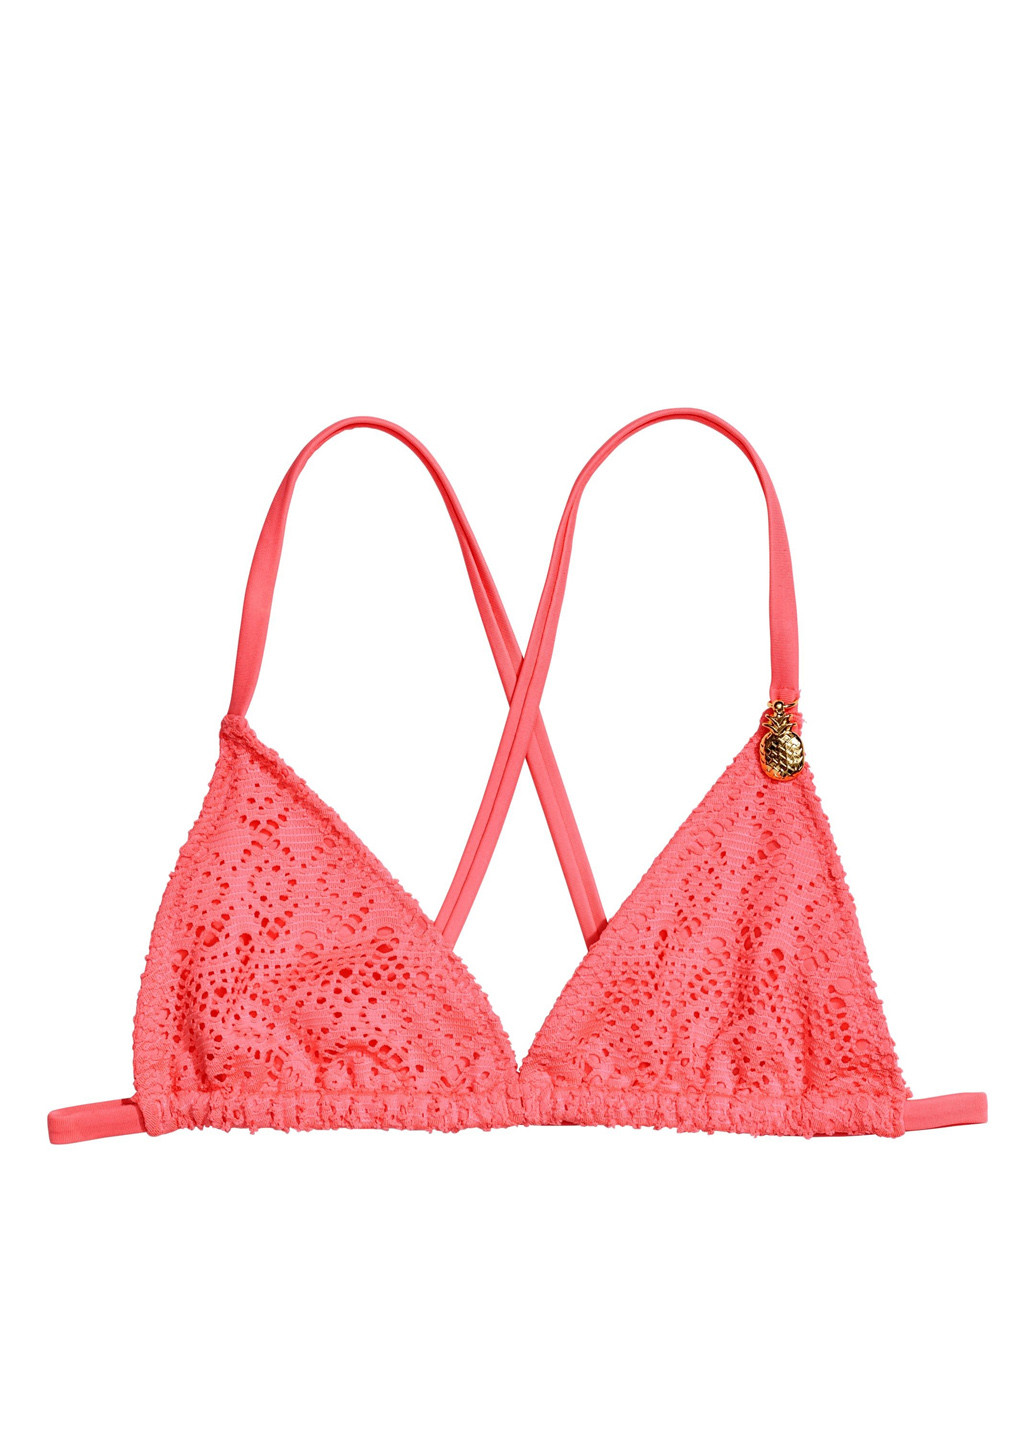 Кислотно-розовый летний купальник (лиф, трусики) H&M